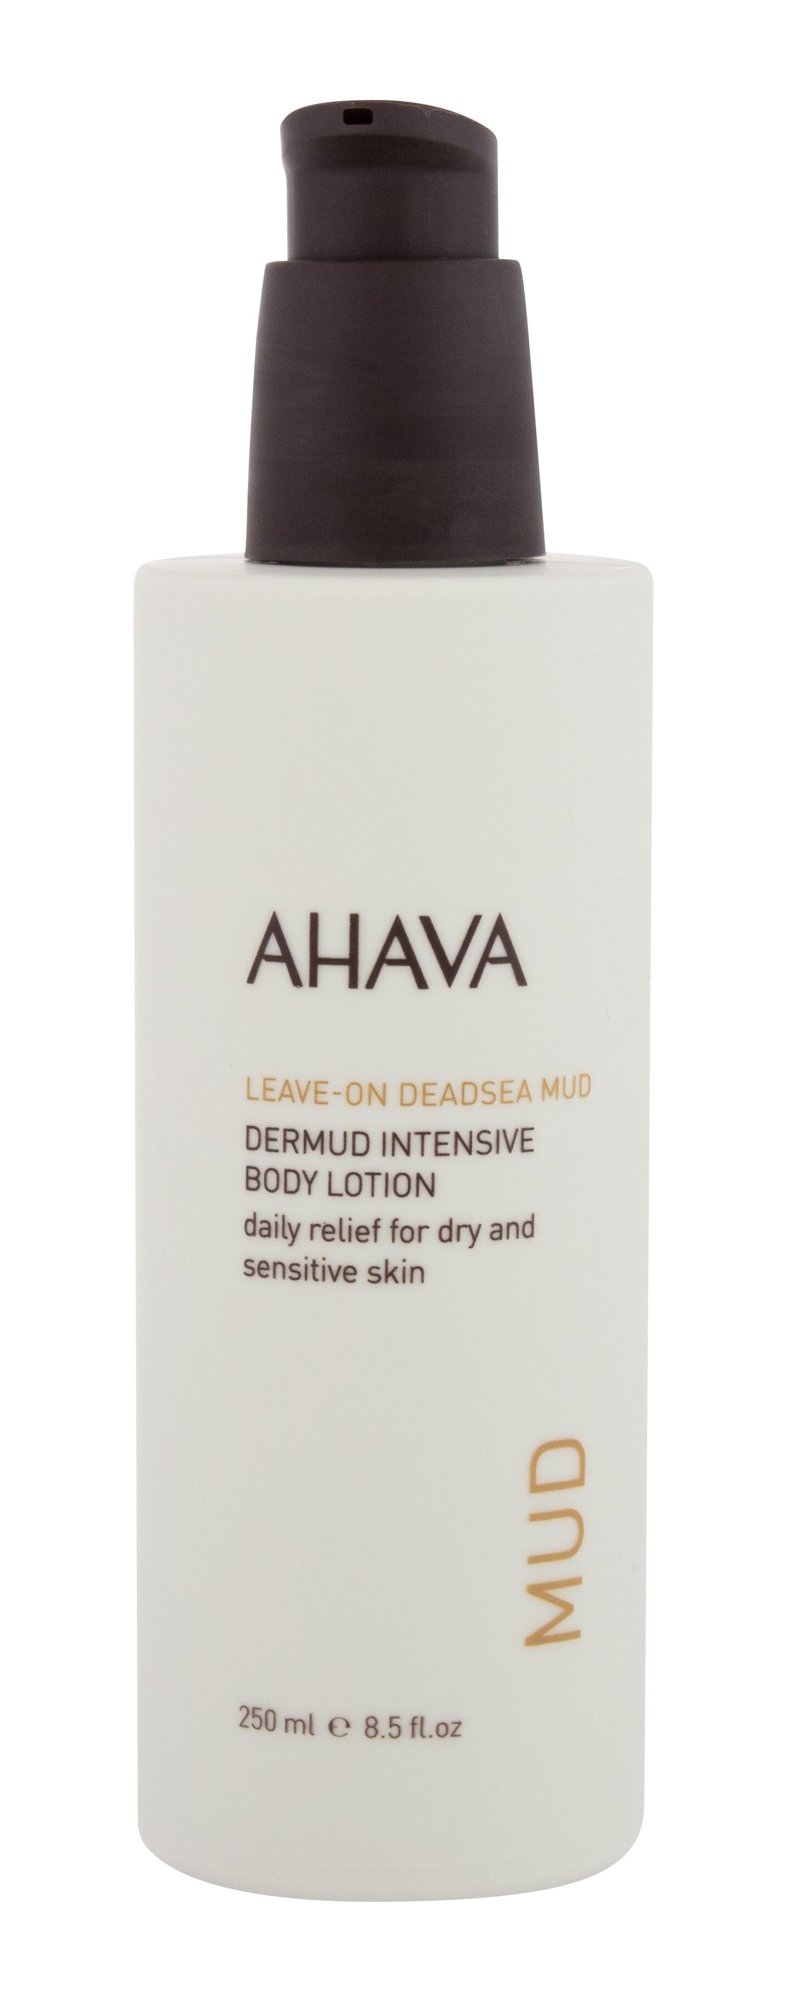 AHAVA Mud Leave-On Deadsea Mud Dermud Intensive kūno losjonas